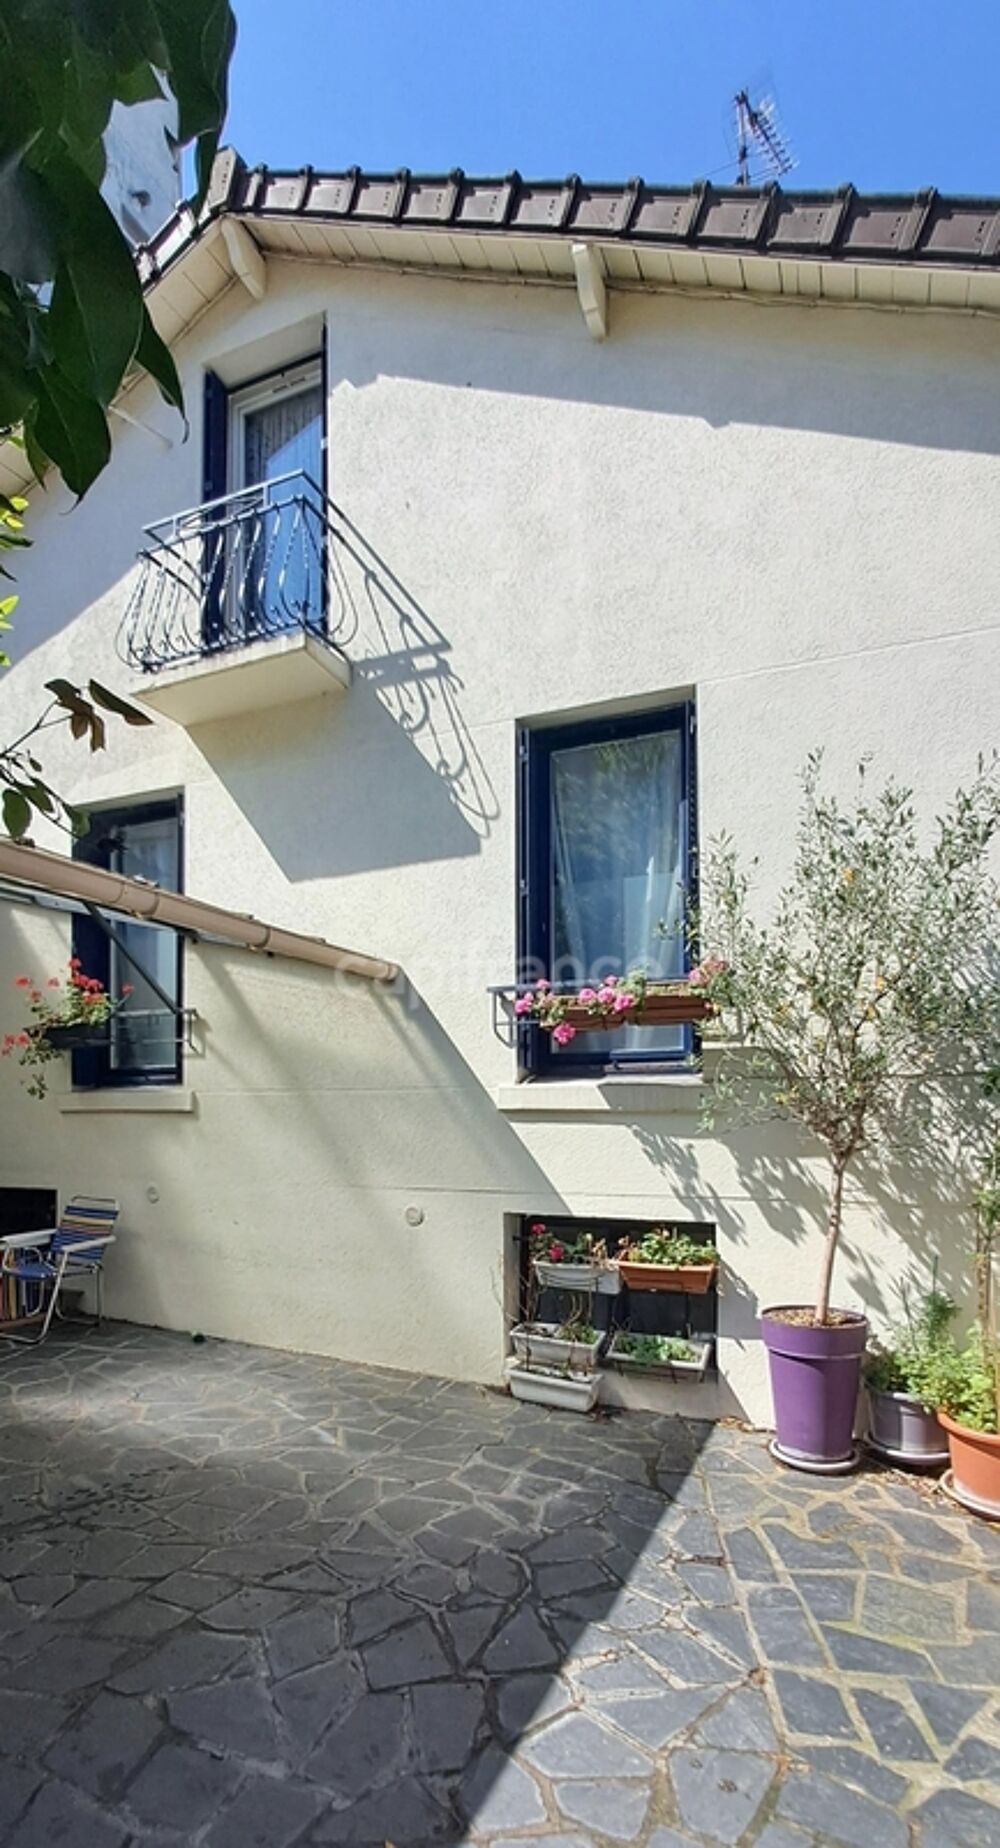 Vente Maison Dpt Seine Saint Denis (93),  vendre  maison P4  - de 104 m2 Les lilas